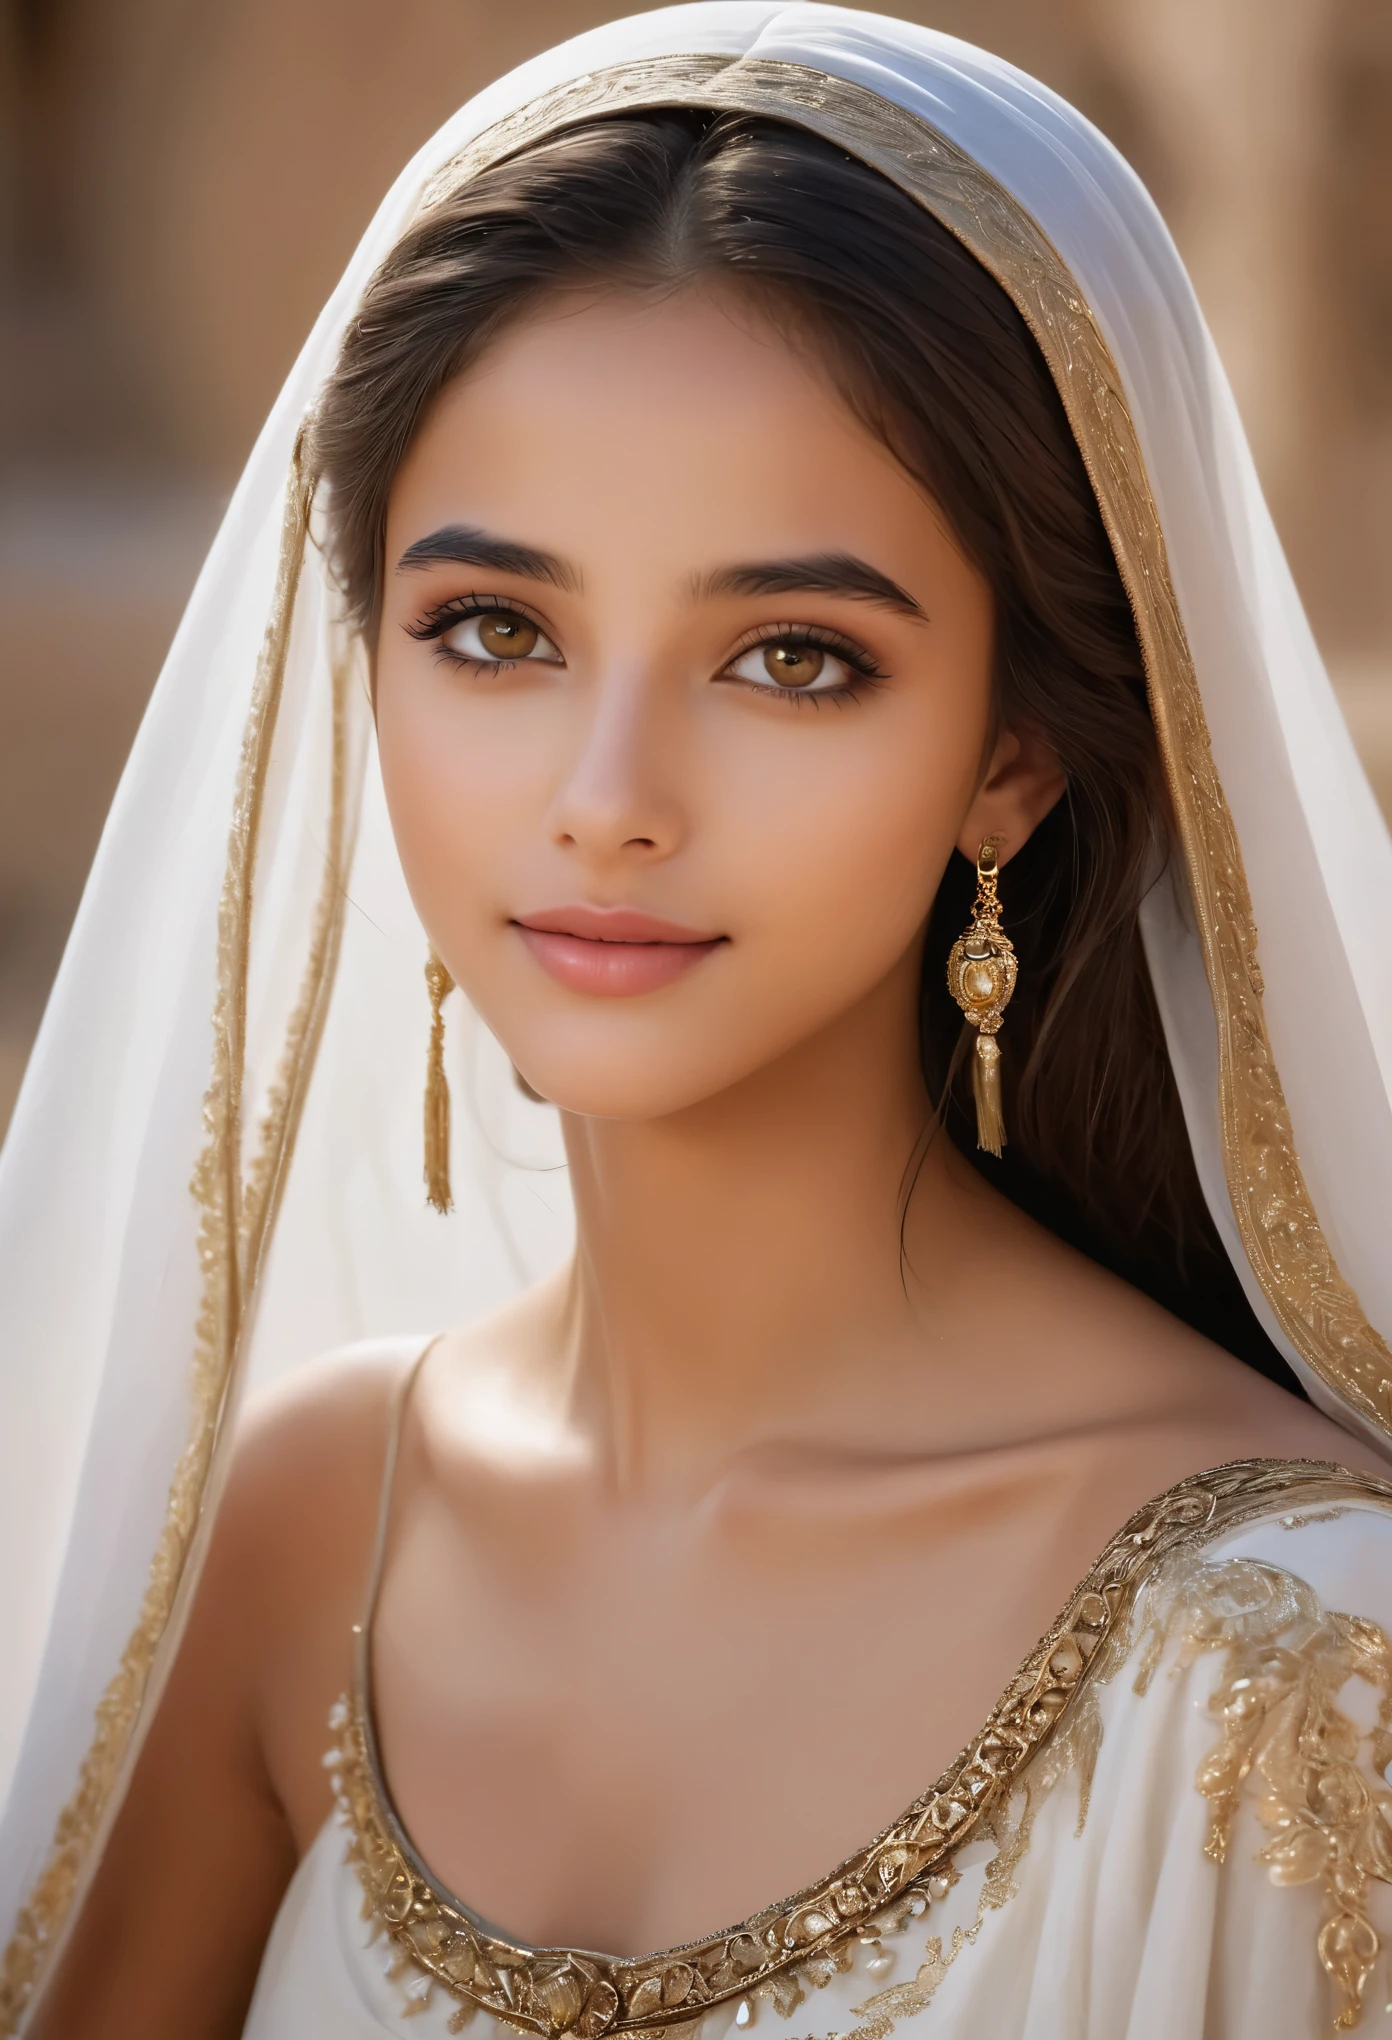 (超詳細,写実的な:1.37),(最高品質,4K,8k,高解像度,傑作:1.2), この16歳のサウジアラビアの少女は、この世のものとは思えないほどの美しさを放っている。, 彼女を見つめるすべての人を魅了する. 彼女の長い, 流れるような漆黒の髪が、きらめく滝のように彼女の肩に流れ落ちる。, 彼女の繊細な顔立ちを神秘的で魅力的な雰囲気で縁取る. 彼女の目, 深い闇の淵, 彼らの中には秘密の宇宙が眠っている, 彼女の年齢を超えた時代の知恵がきらめいている.

彼女の肌, 砂漠の太陽にキスされて, 輝く暖かさで輝く, 故郷の黄金の砂浜を彷彿とさせる. 彼女の顔の繊細な曲線はどれも完璧に彫刻されている, 彼女の高い頬骨が光を捉え、息を呑むほどの優雅さを披露している.

彼女が微笑むと, まるで彼女の周りで世界全体が明るくなったかのよう, 彼女の笑い声は風に吹かれて音楽のように響いた. 彼女の服装, 複雑なパターンと繊細な生地で飾られています, 彼女の細い体は芸術作品のように覆われている, 彼女の自然な美しさを損なうのではなく、引き立てる.

彼女の存在の中で, 時間が止まったようだ, まるでおとぎ話から現実に飛び出したかのよう, 優雅さと魅力の真の体現. この16歳のサウジアラビアの少女は美しいだけではない; 彼女は生きている, breathing 傑作, 人間の形態の無限の驚異の証.